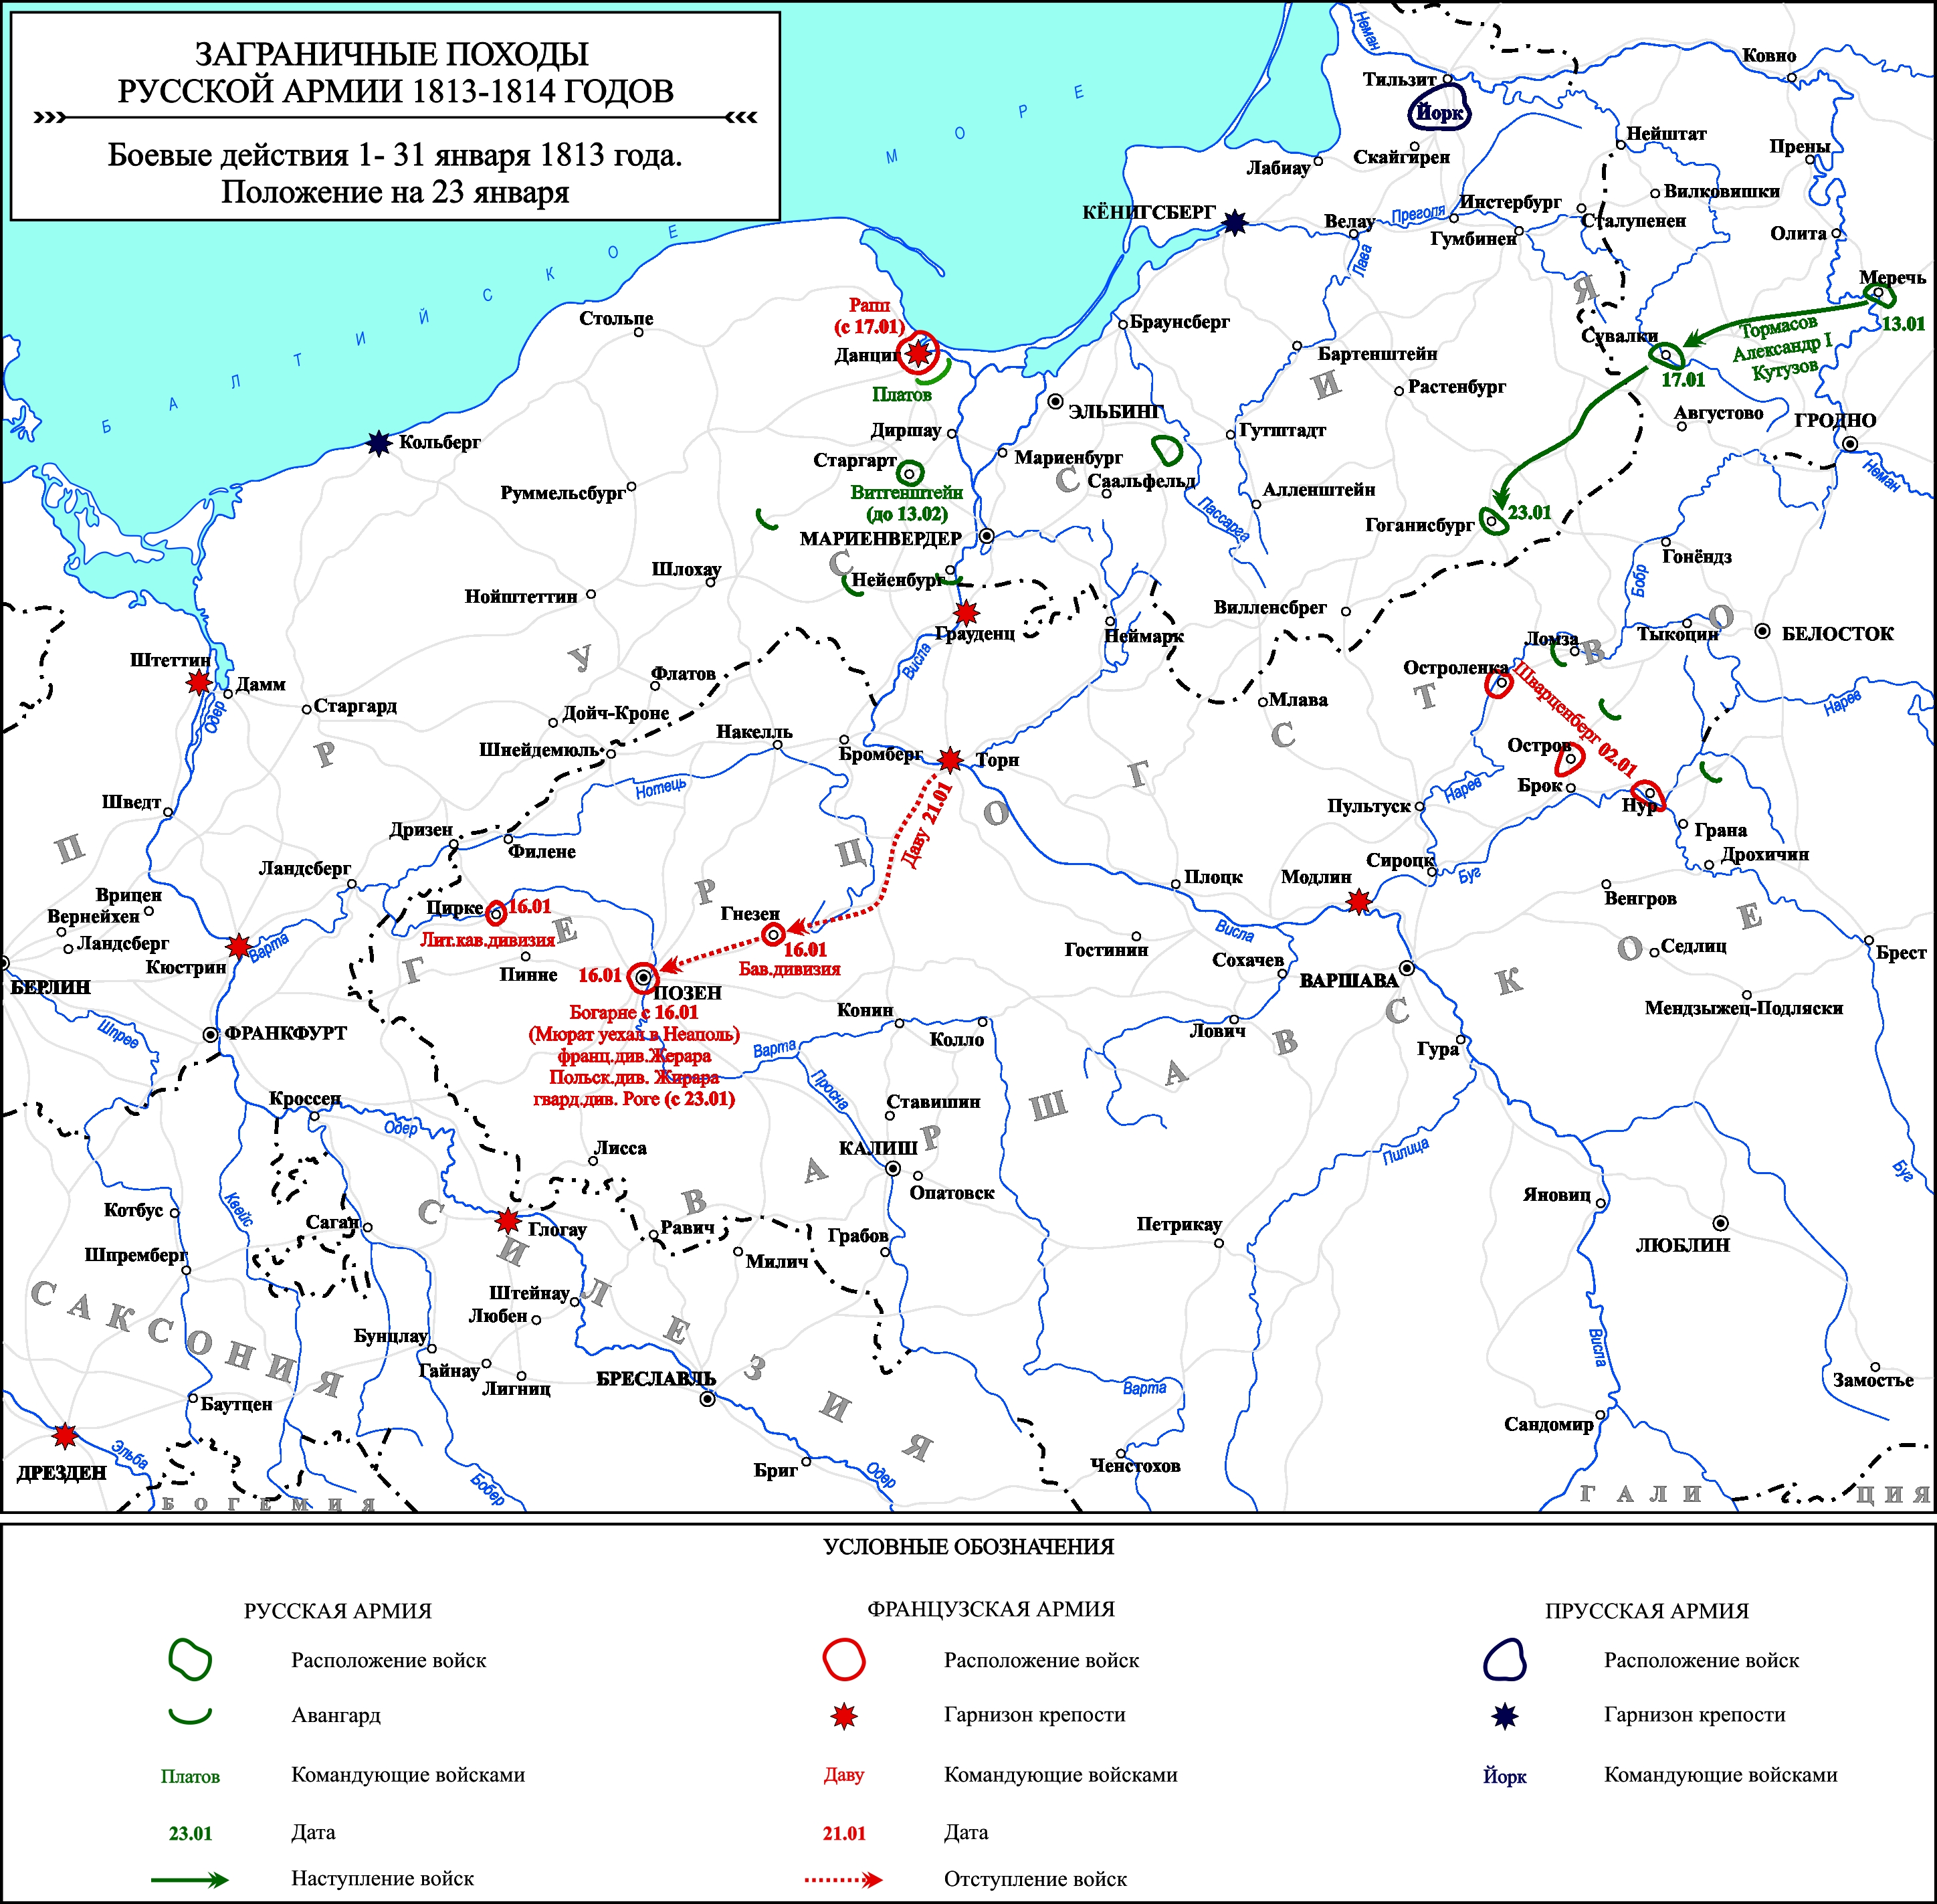 Заграничные походы Русской армии 1813-1814 гг. Положение на 23 января 1813 г.